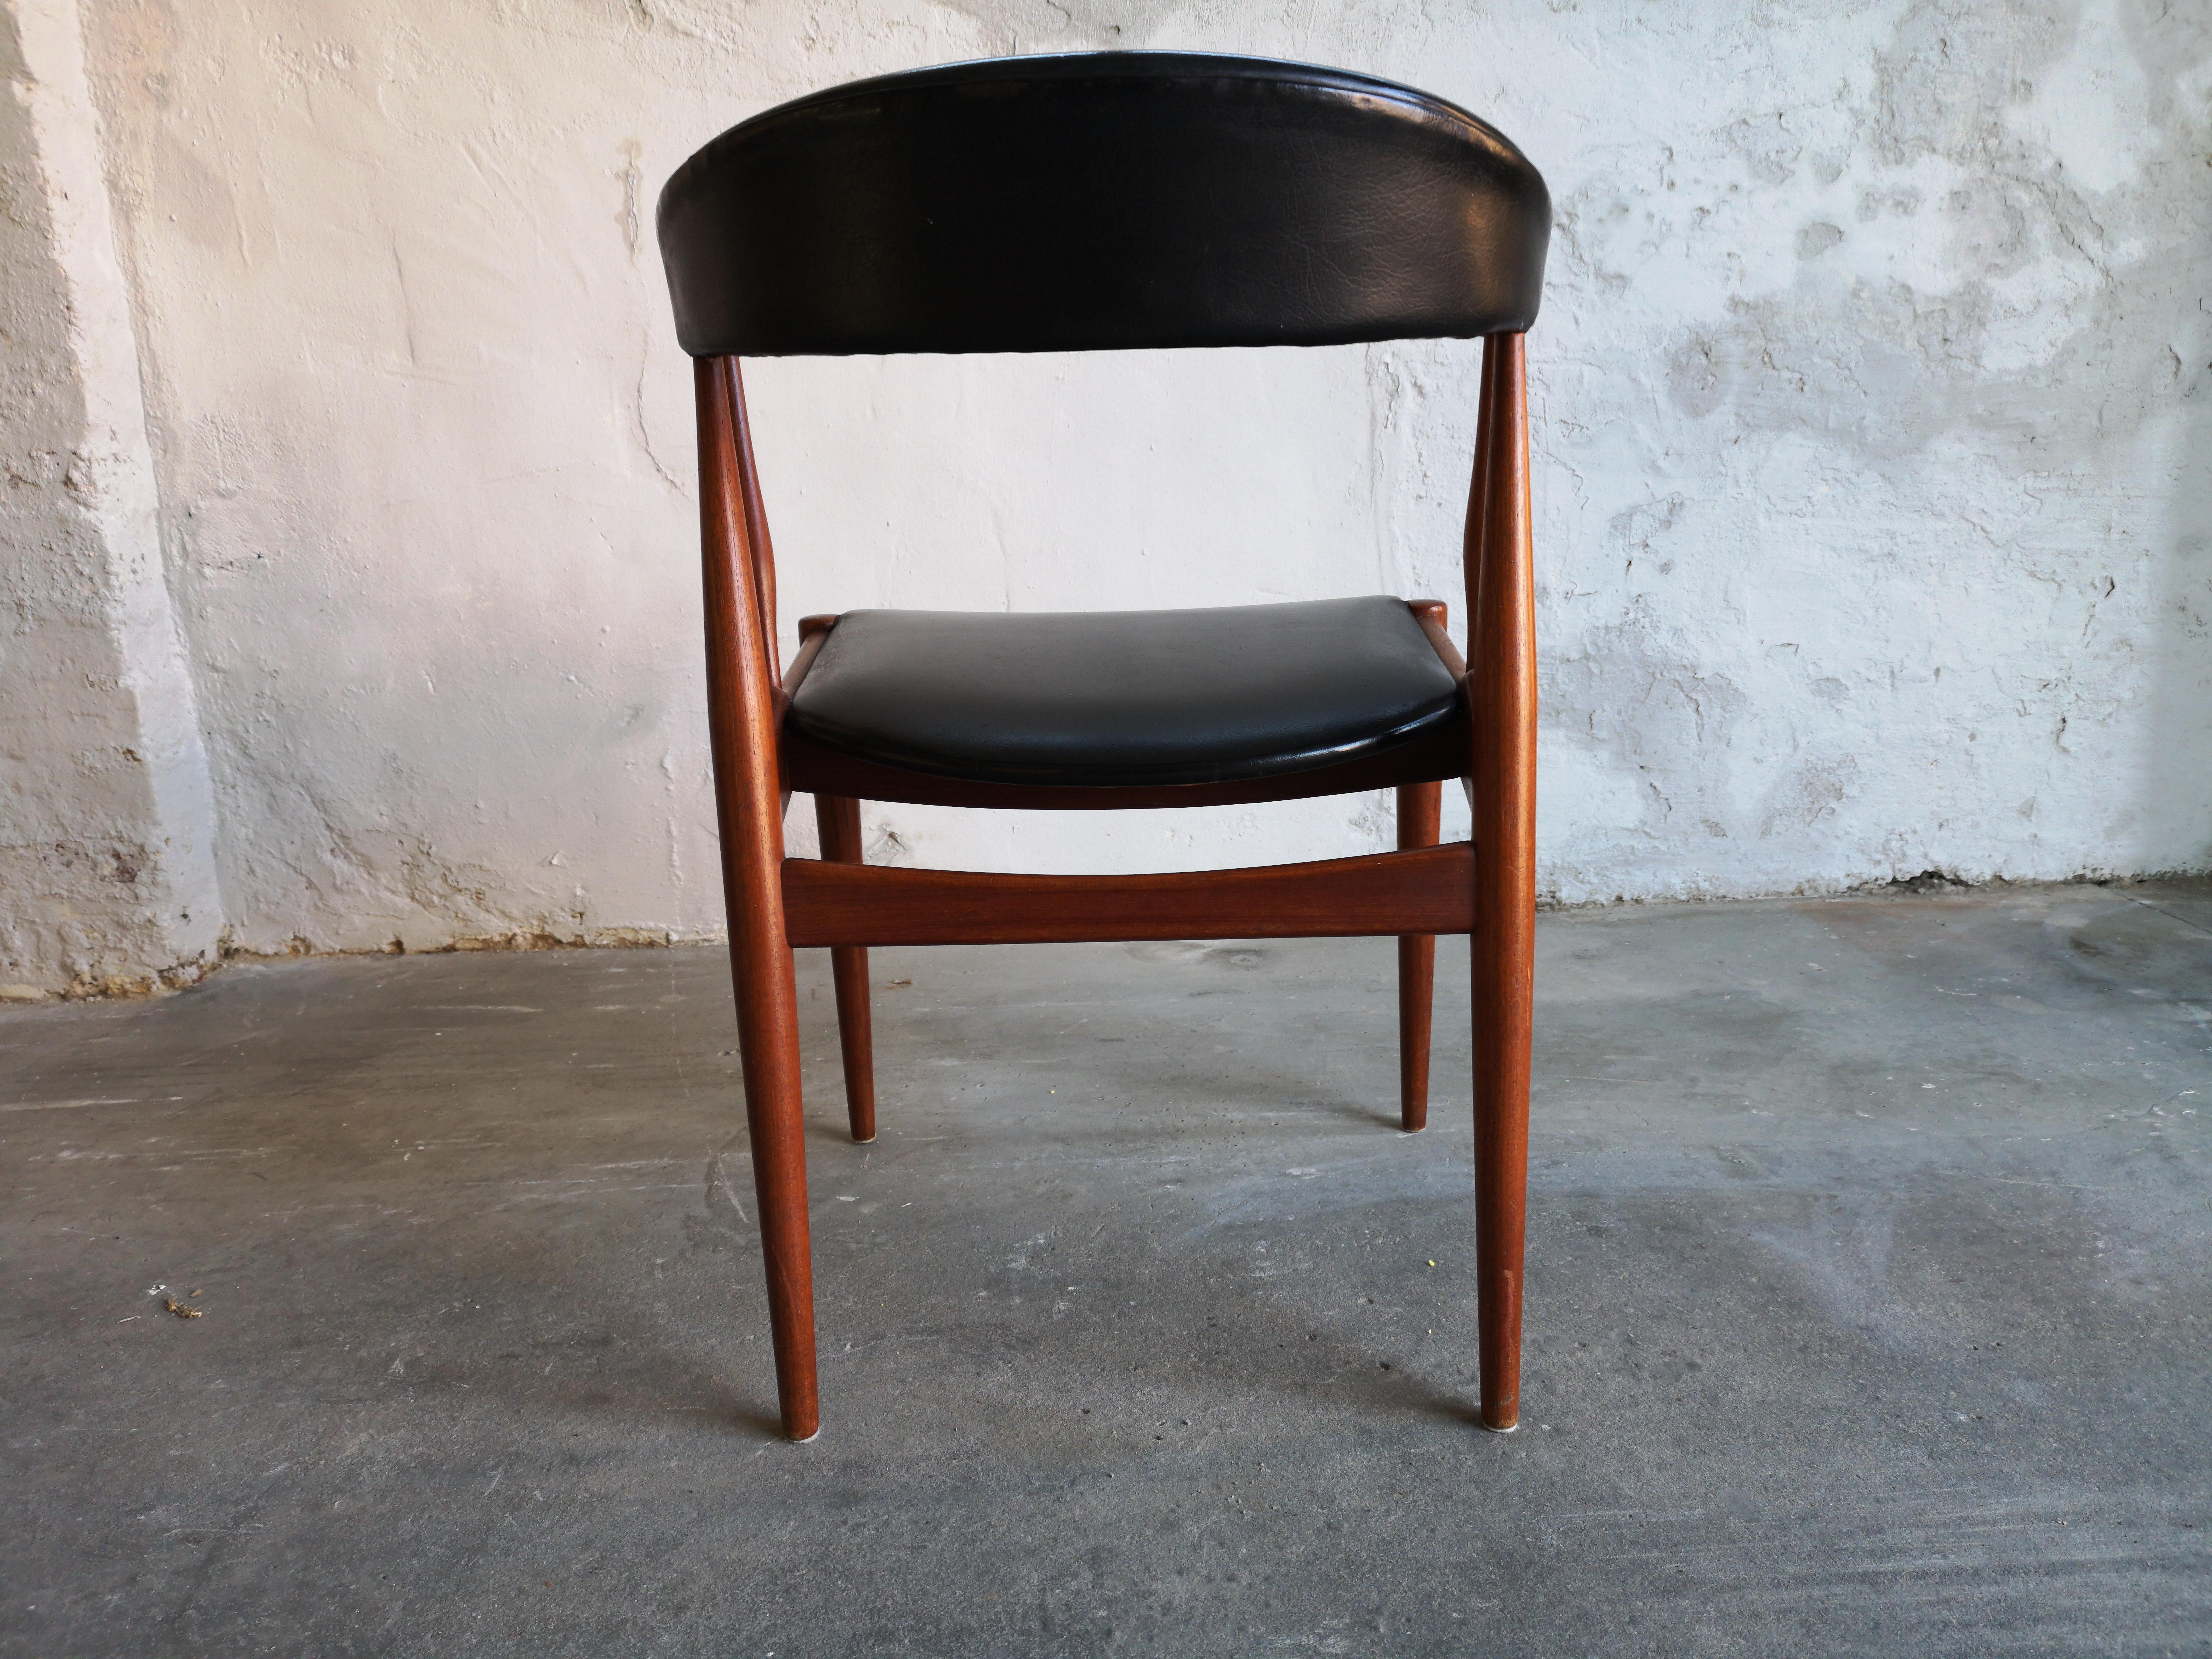 20th Century Johannes Andersen Teak Chair, Model BA113, Black Vinyl Upholstery